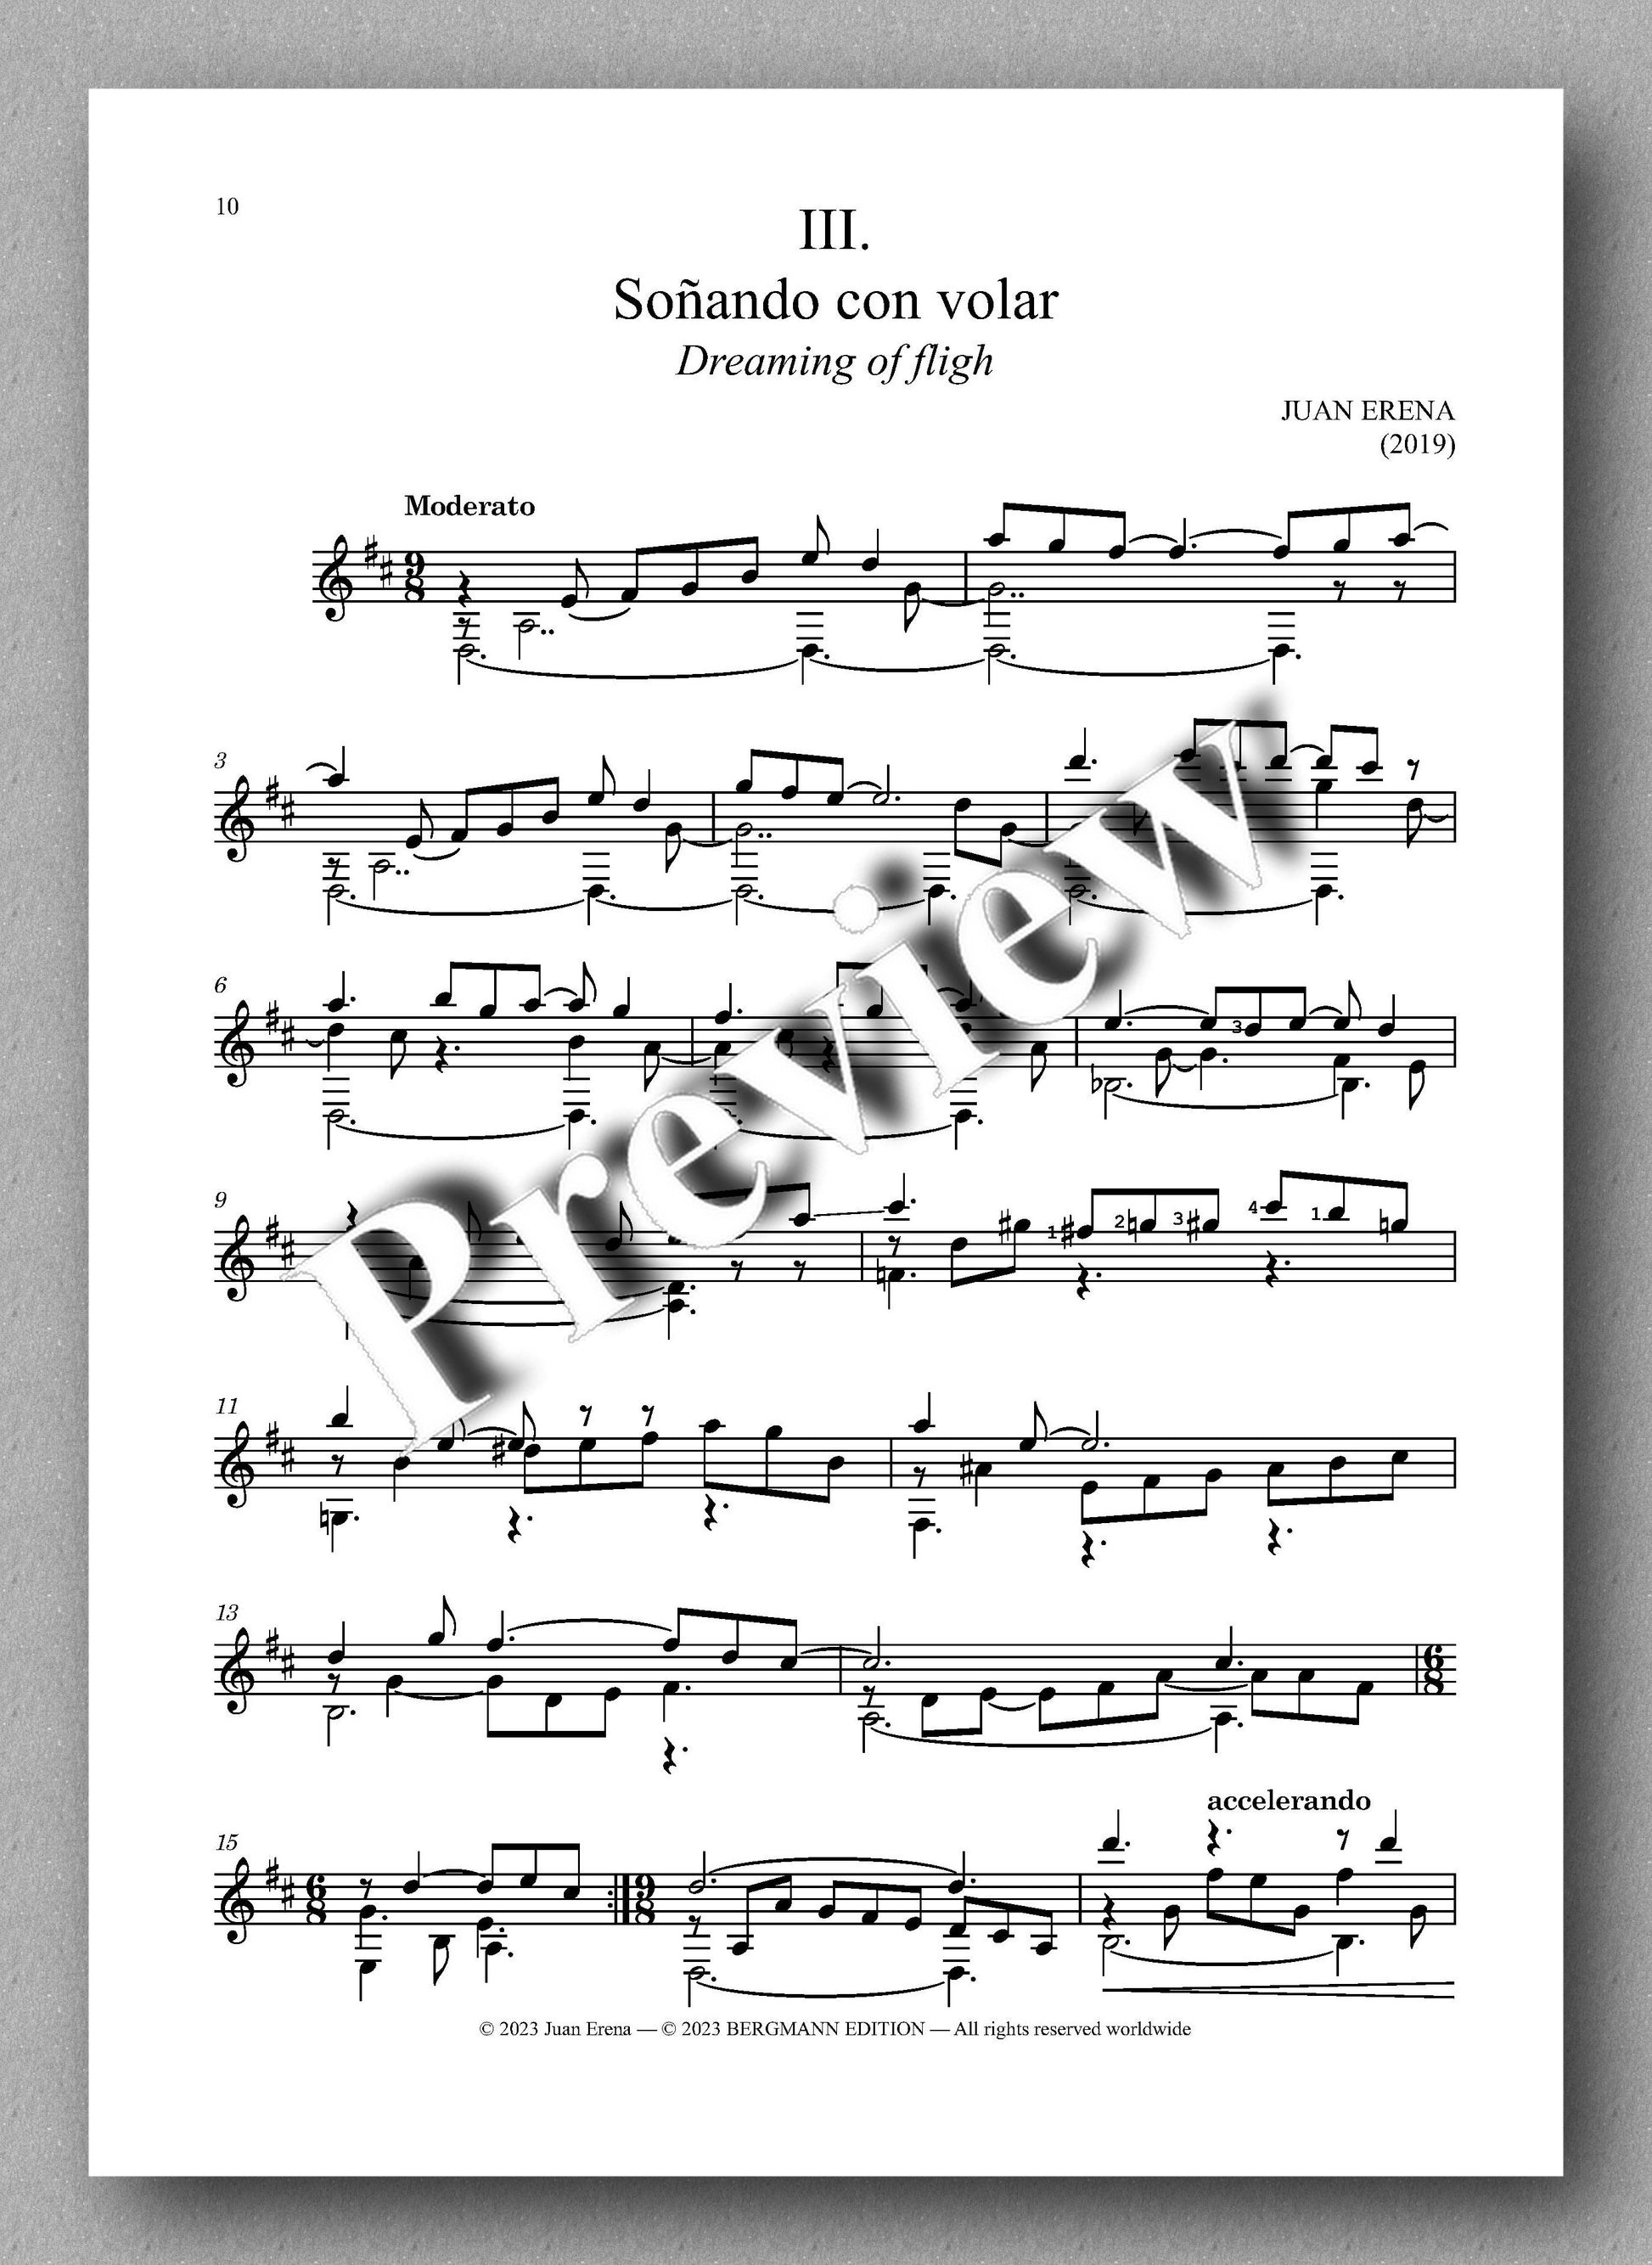 Juan Erena, Sonata IV, (Alas rotas - Broken Wings) - preview of the music score 3